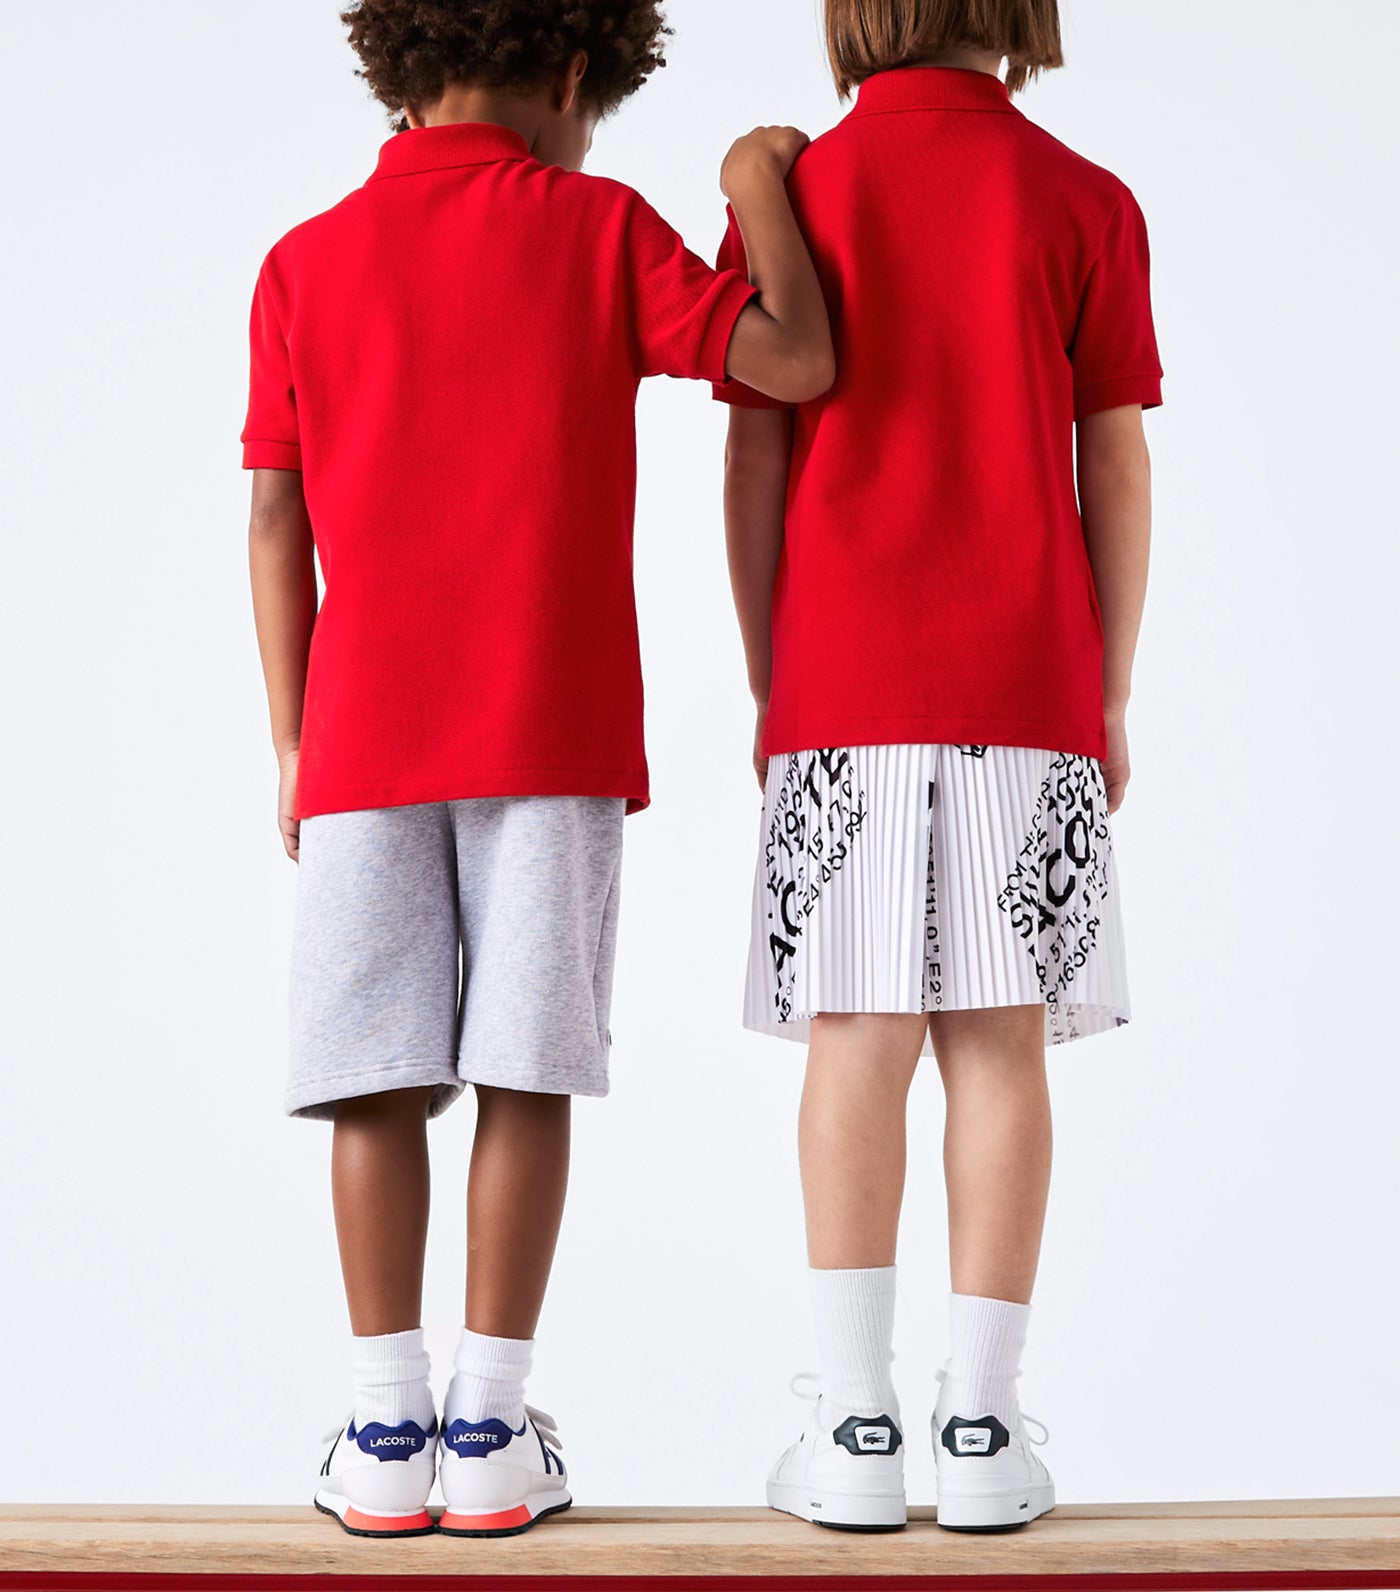 Kids' Lacoste Petit Piqué Polo Shirt Red